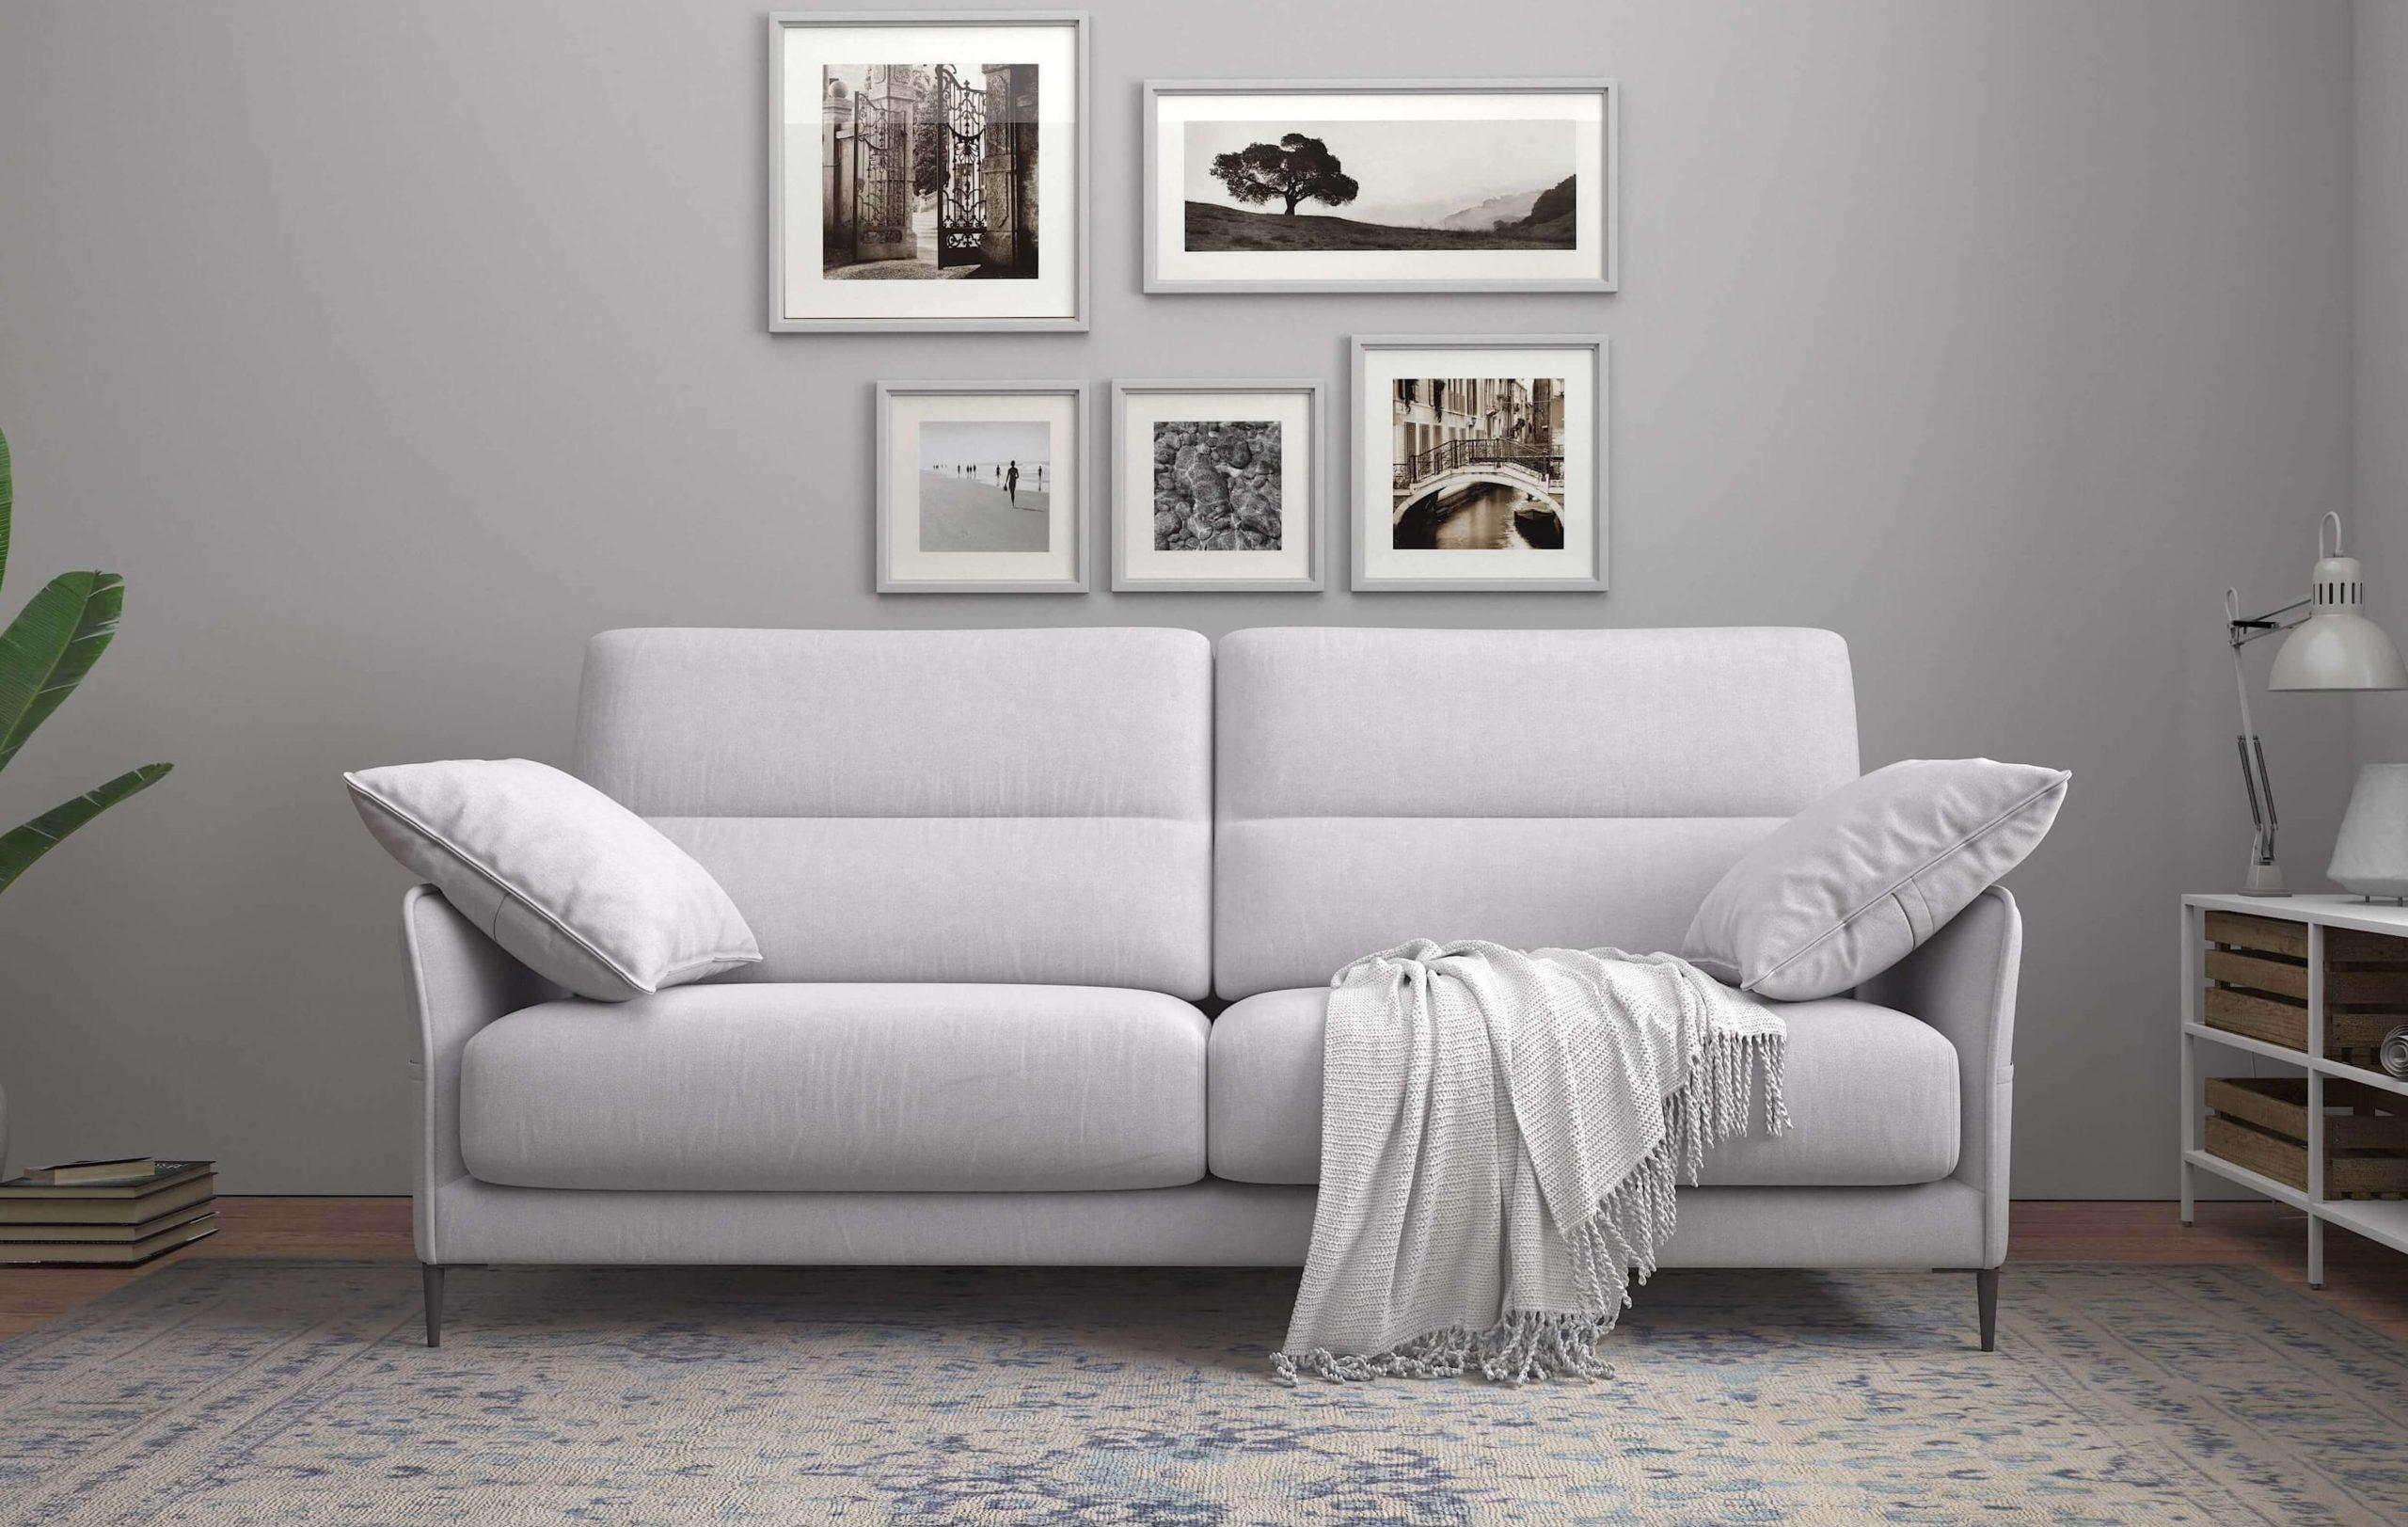   Malaga Sofa Malaga-Light-Grey-Compact-Sofa  